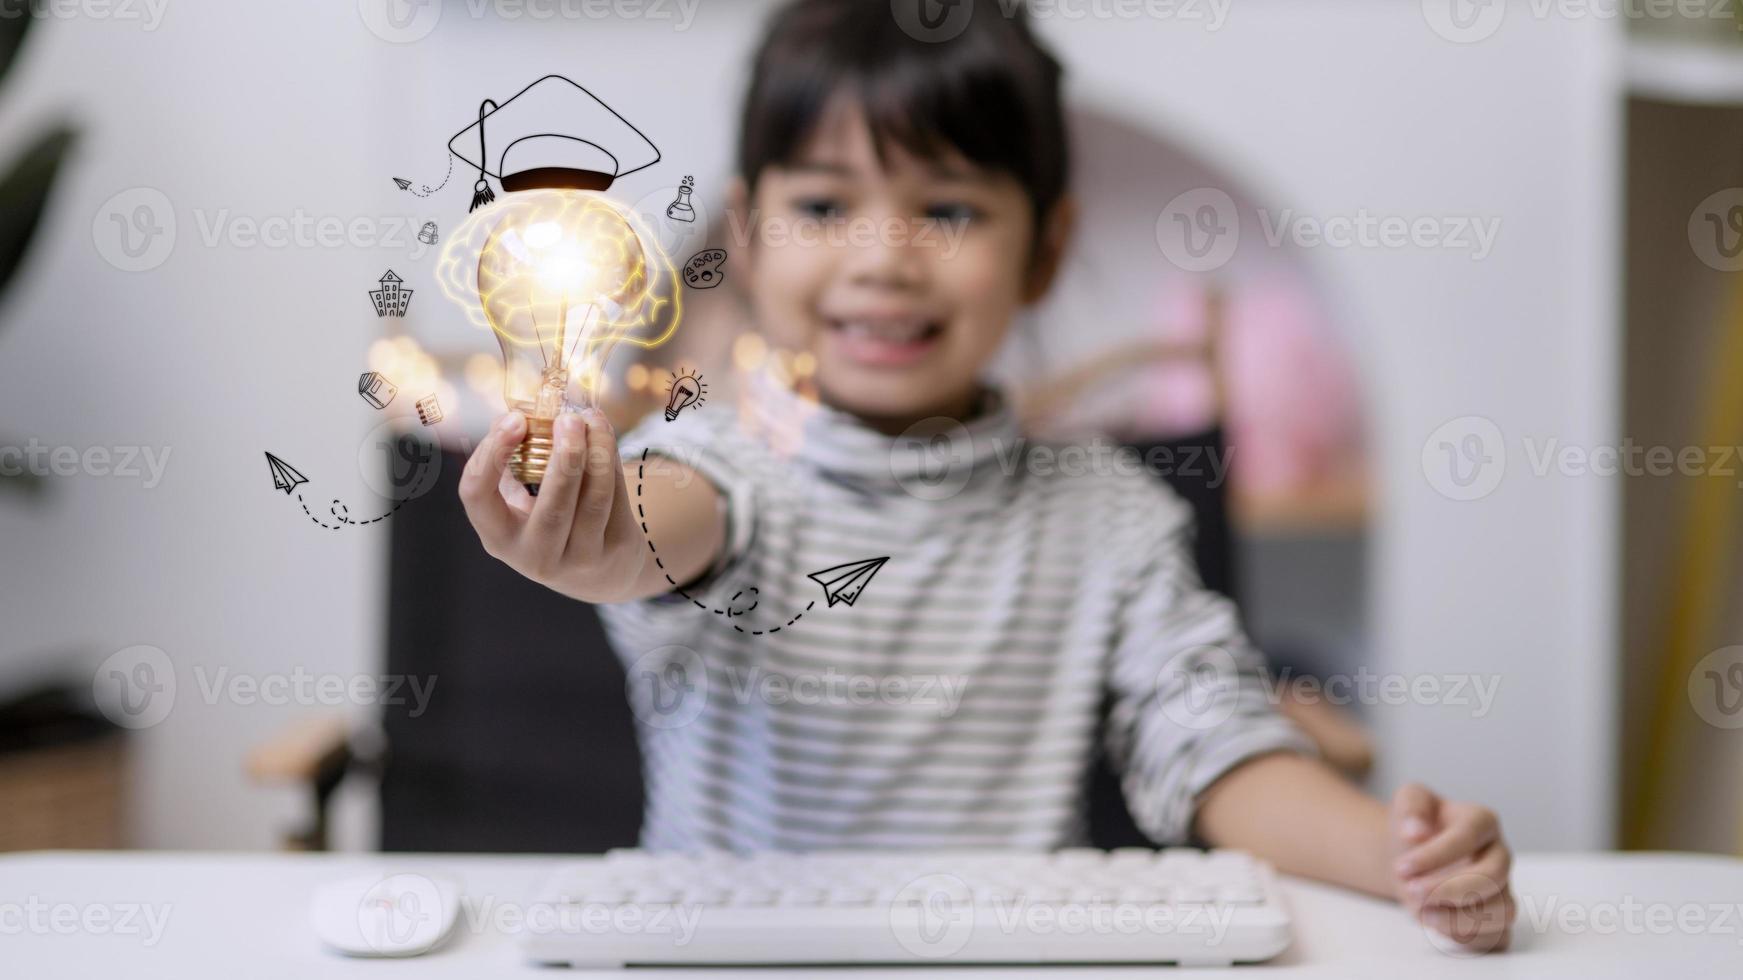 idée créative, pensée brillante, éducation, cognition des connaissances. portrait intelligent intelligent fille curieuse enfant avec lampe rougeoyante à la main photo